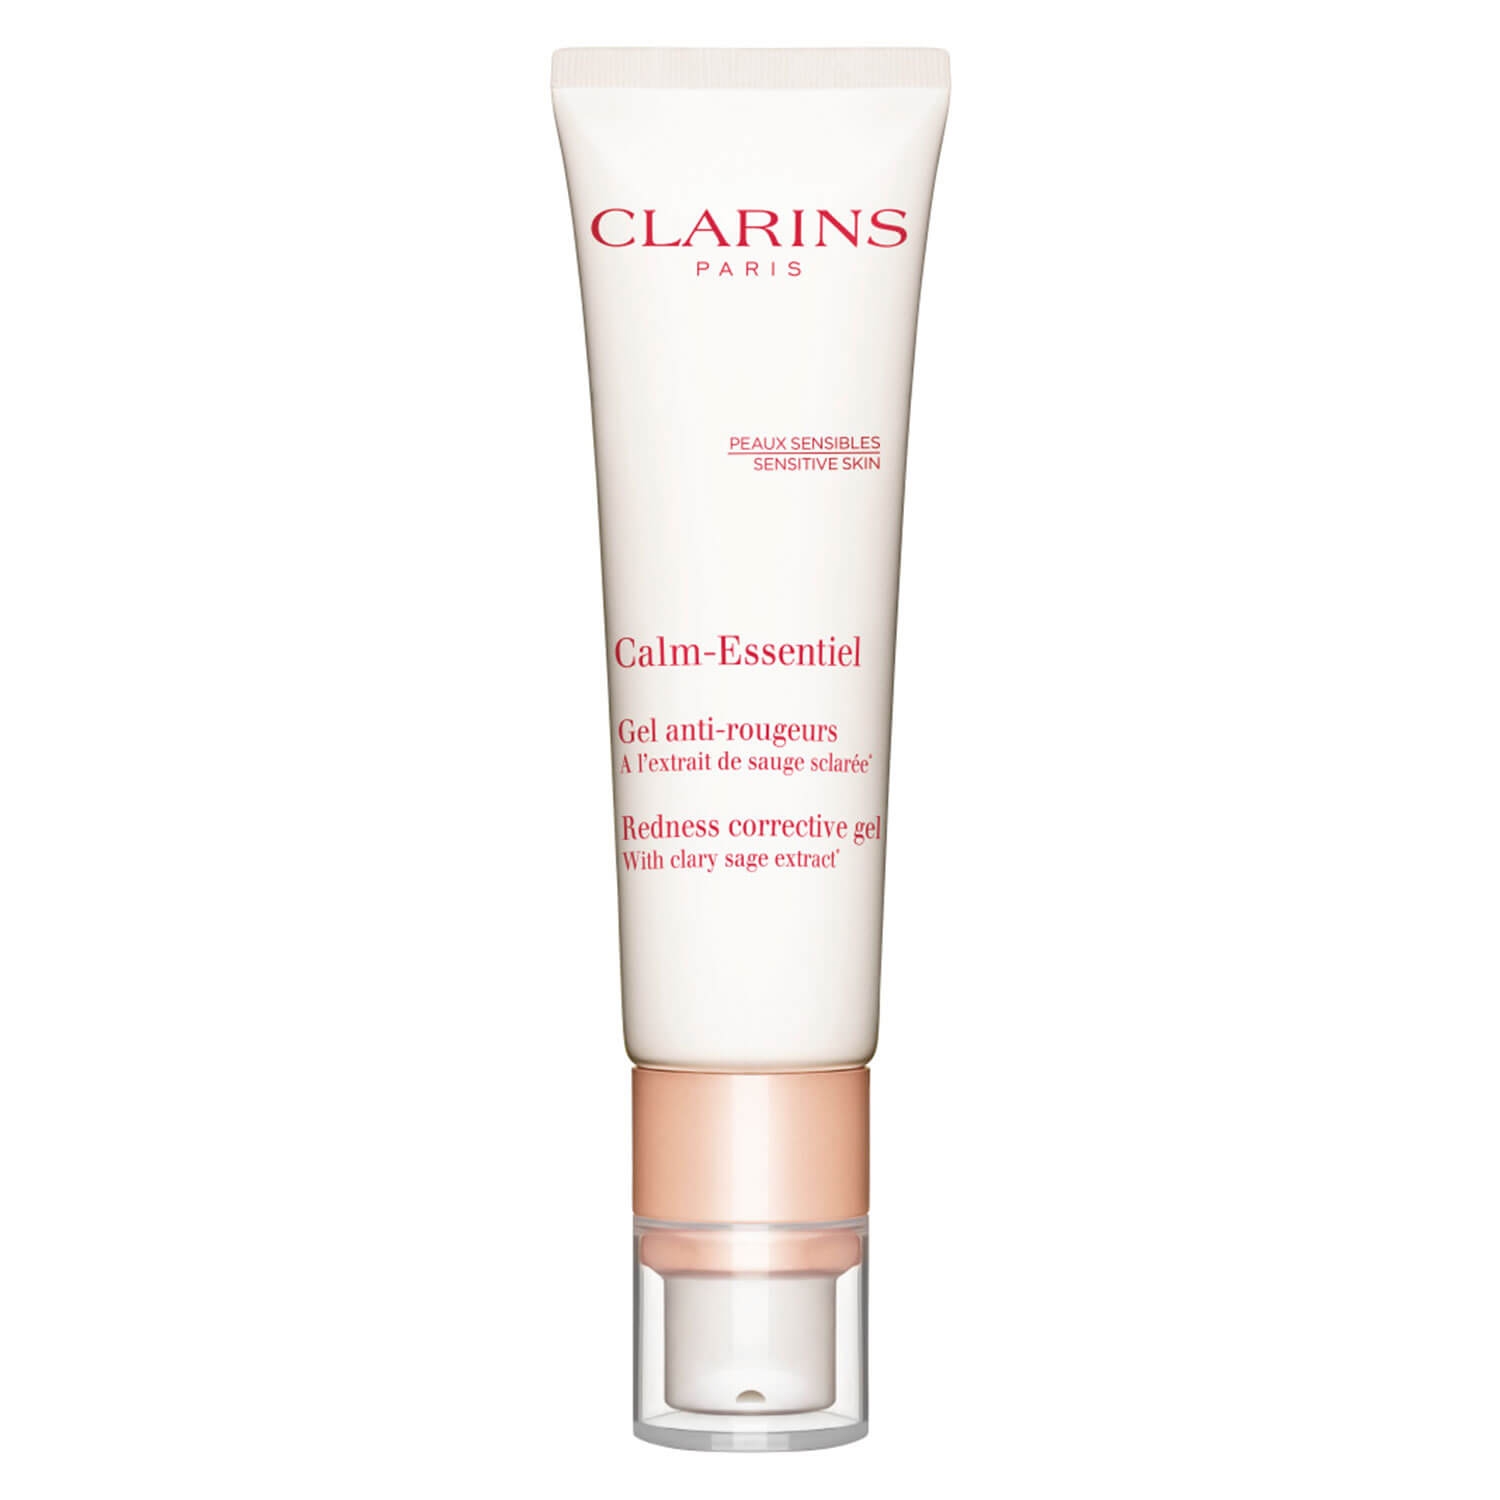 Produktbild von Clarins Skin - Gel Anti-Rougeurs Calm-Essentiel